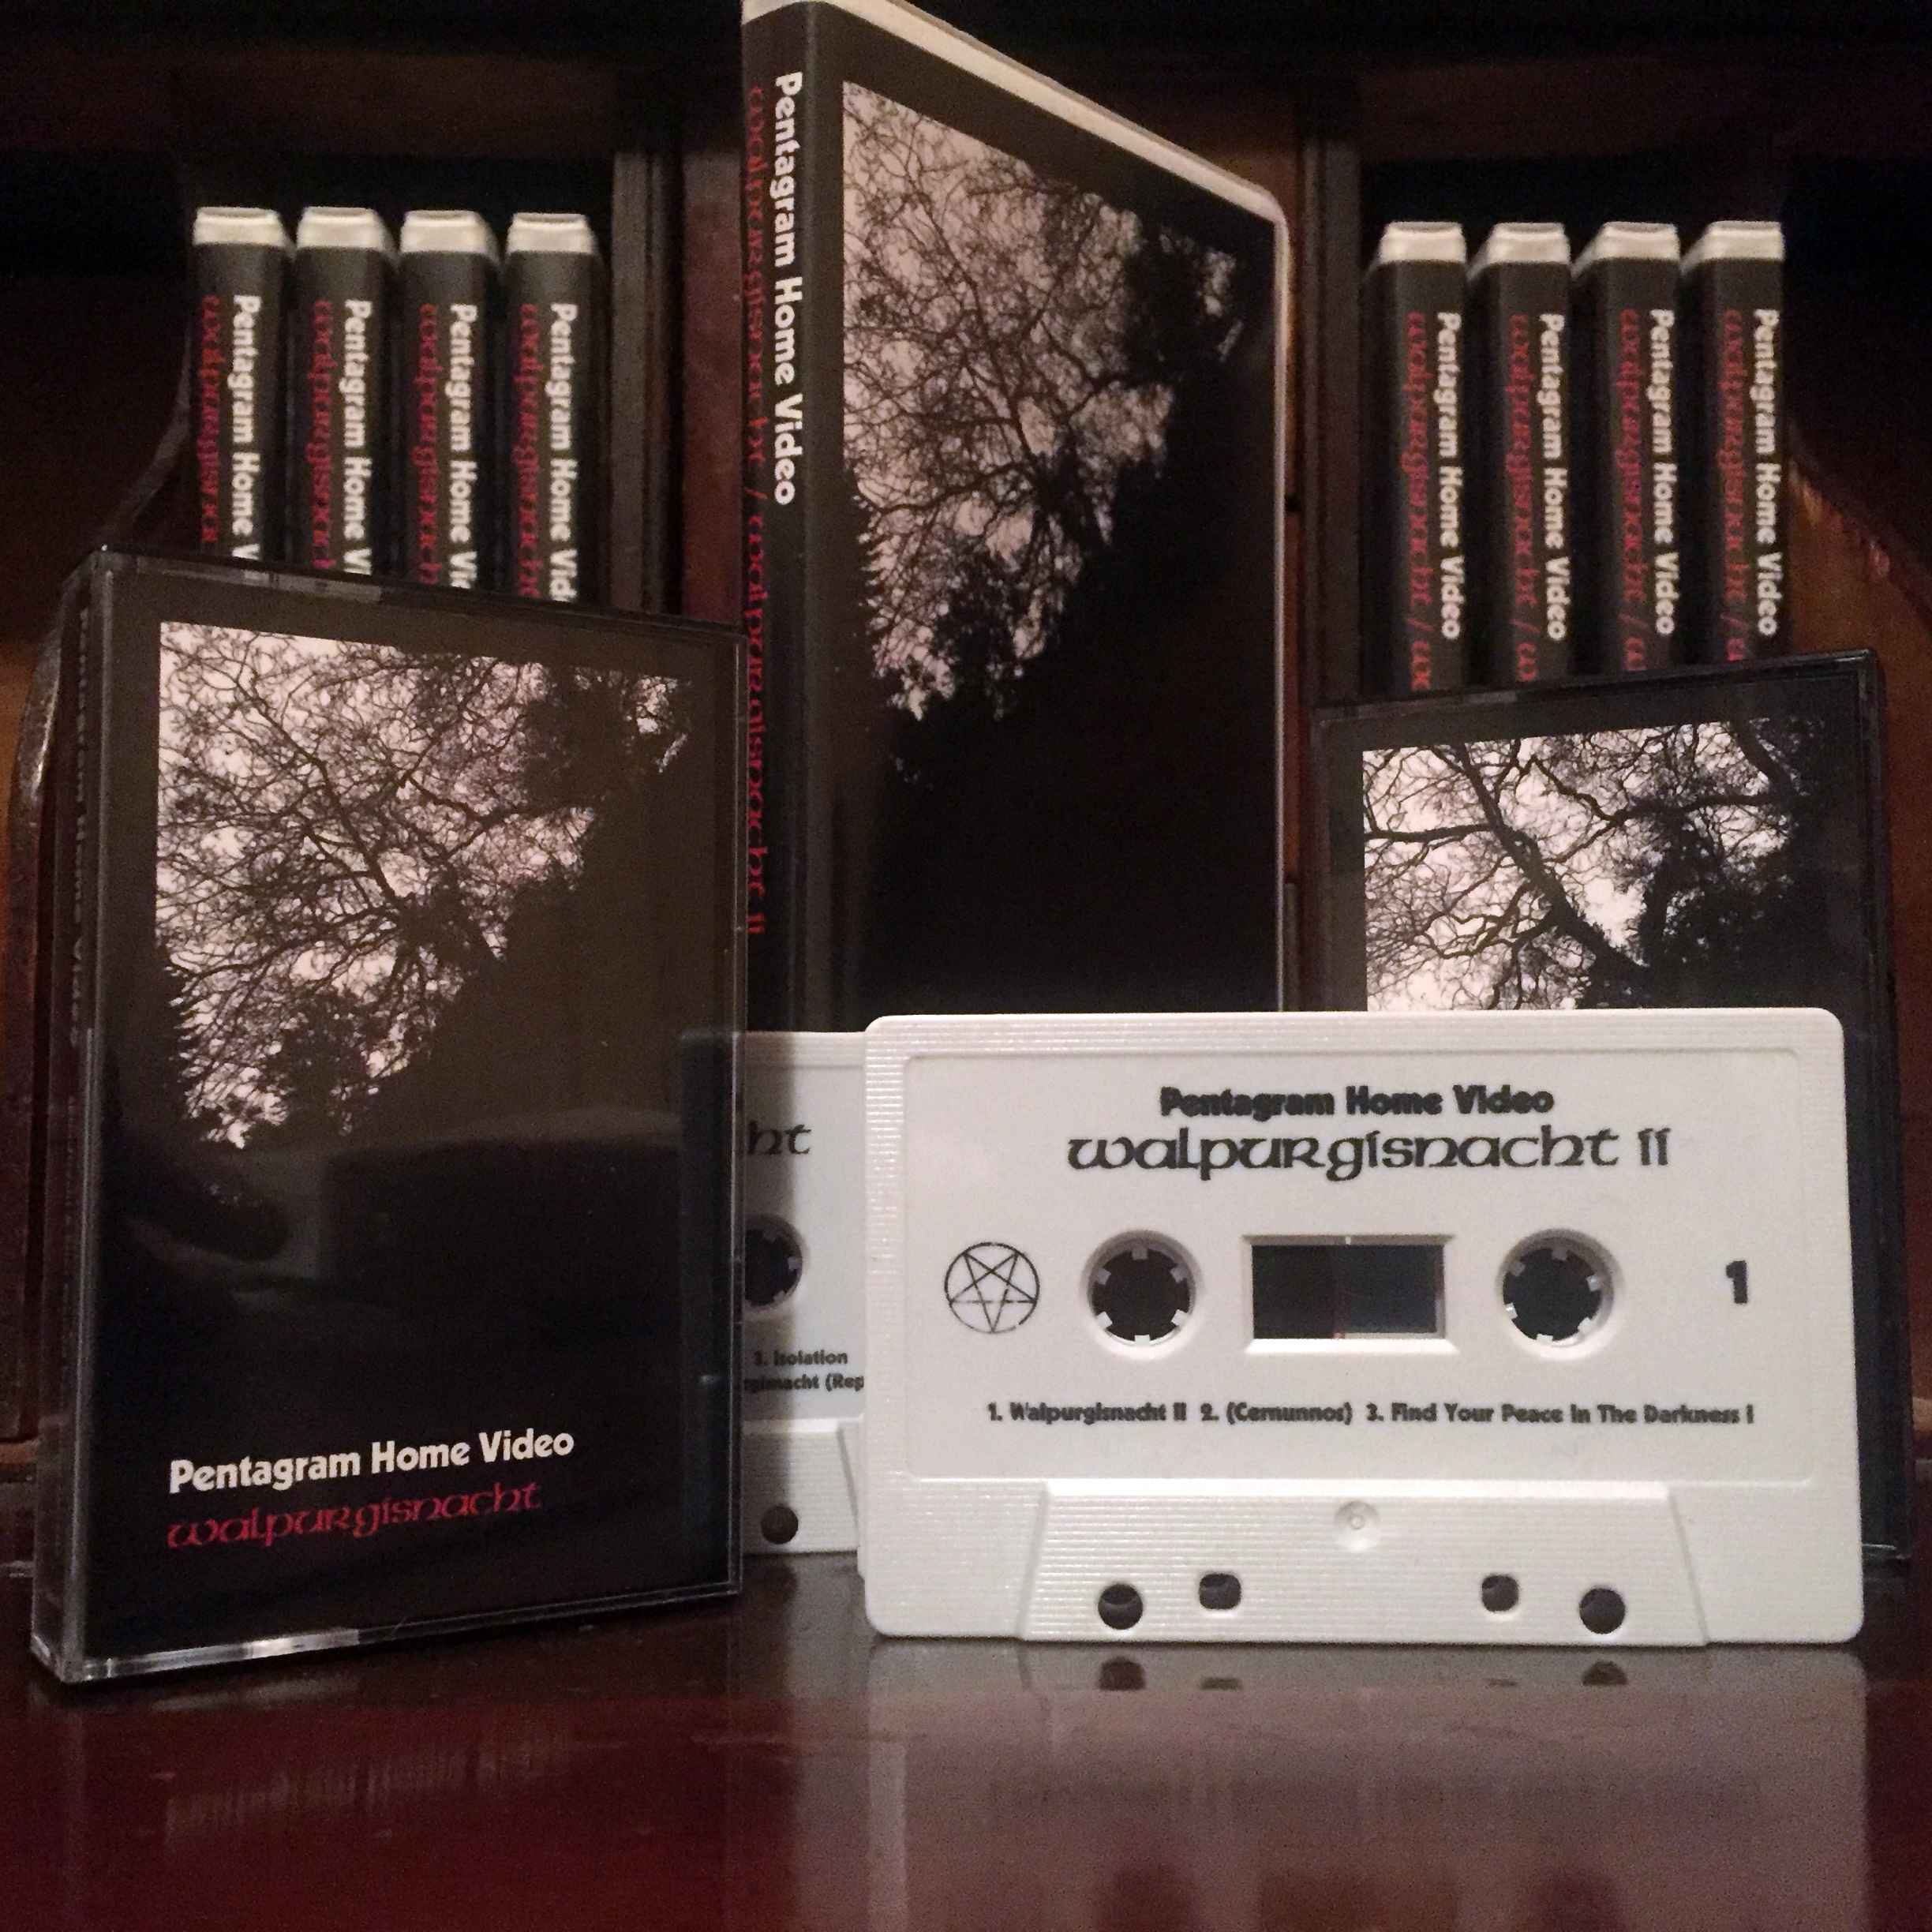 walpurgisnacht-ii-cassettes.jpg